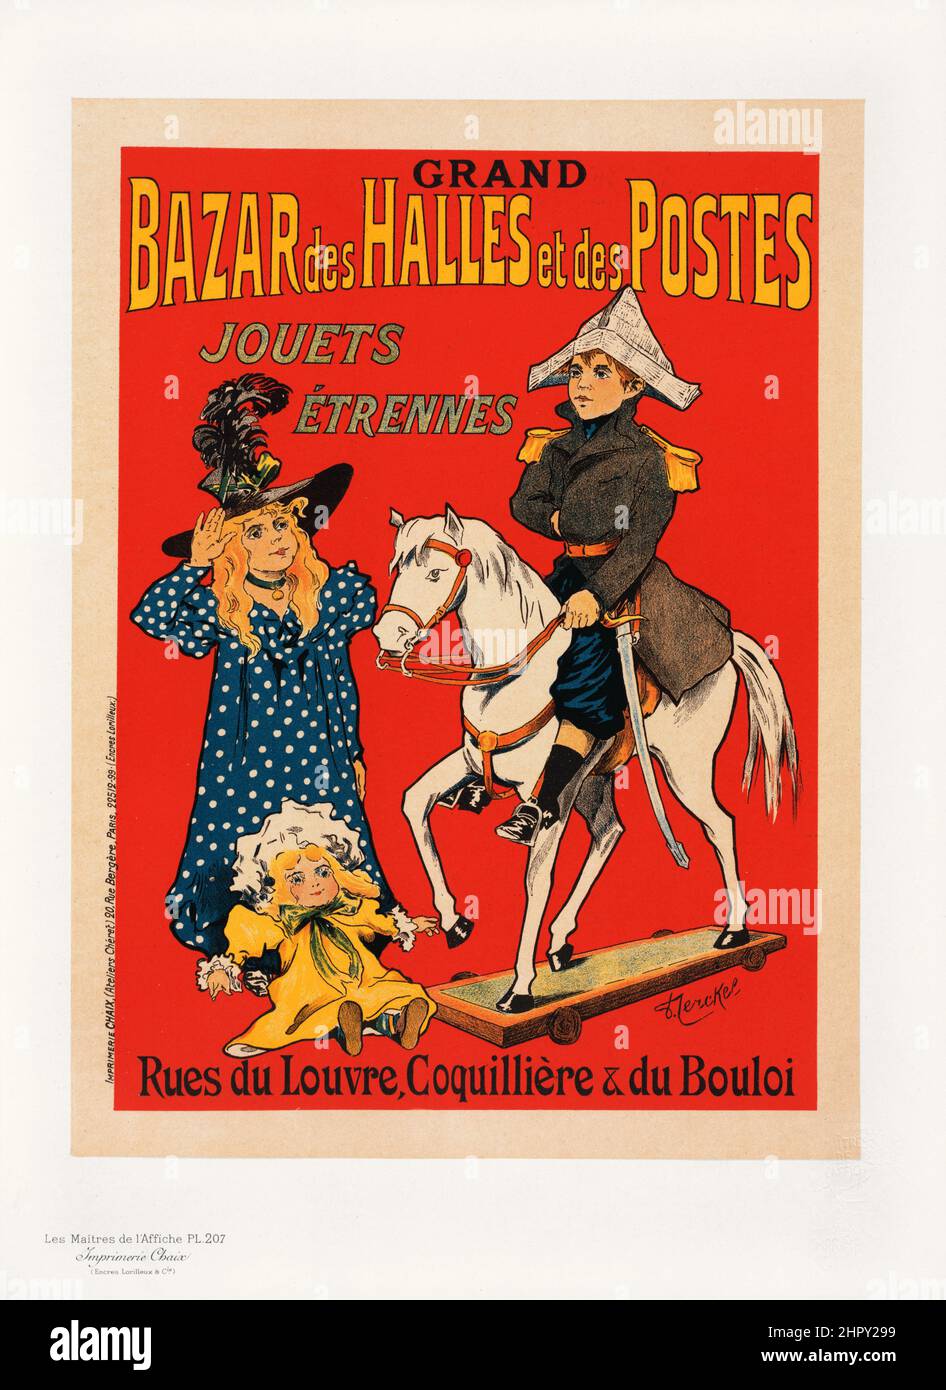 Maitres de l'affiche vol 5 - Plato 207 - Fernand Fernel, 1900 - Bazar des Halles et des Postes. Los juouets Etrennes. Foto de stock